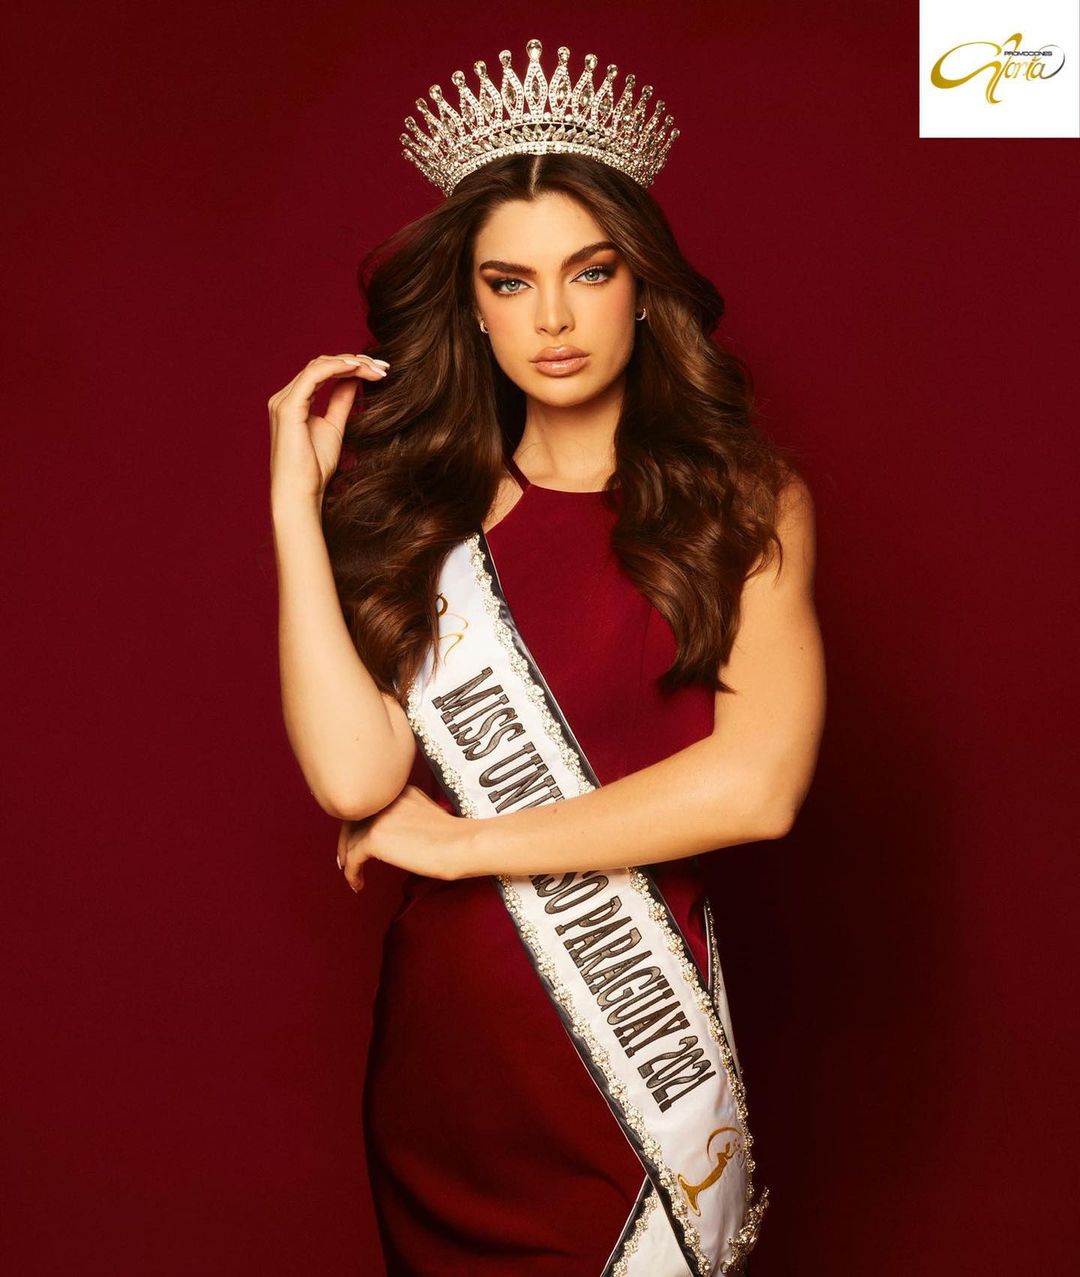 Nadia Ferreira nos representará en la edición de Miss Universo 2021. Foto: Promociones Gloria